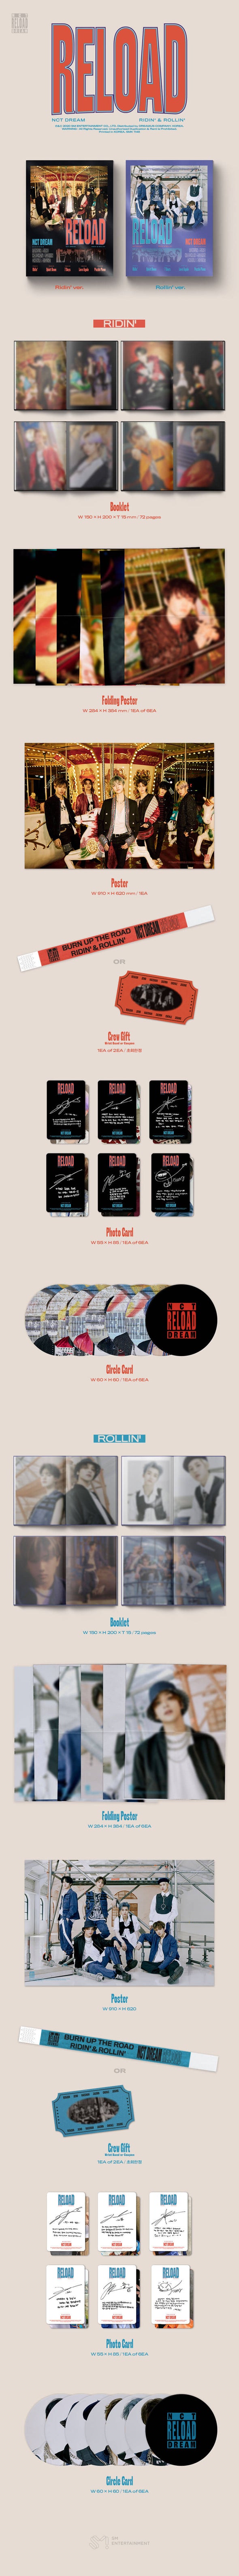 NCT DREAM - 'Reload' Album